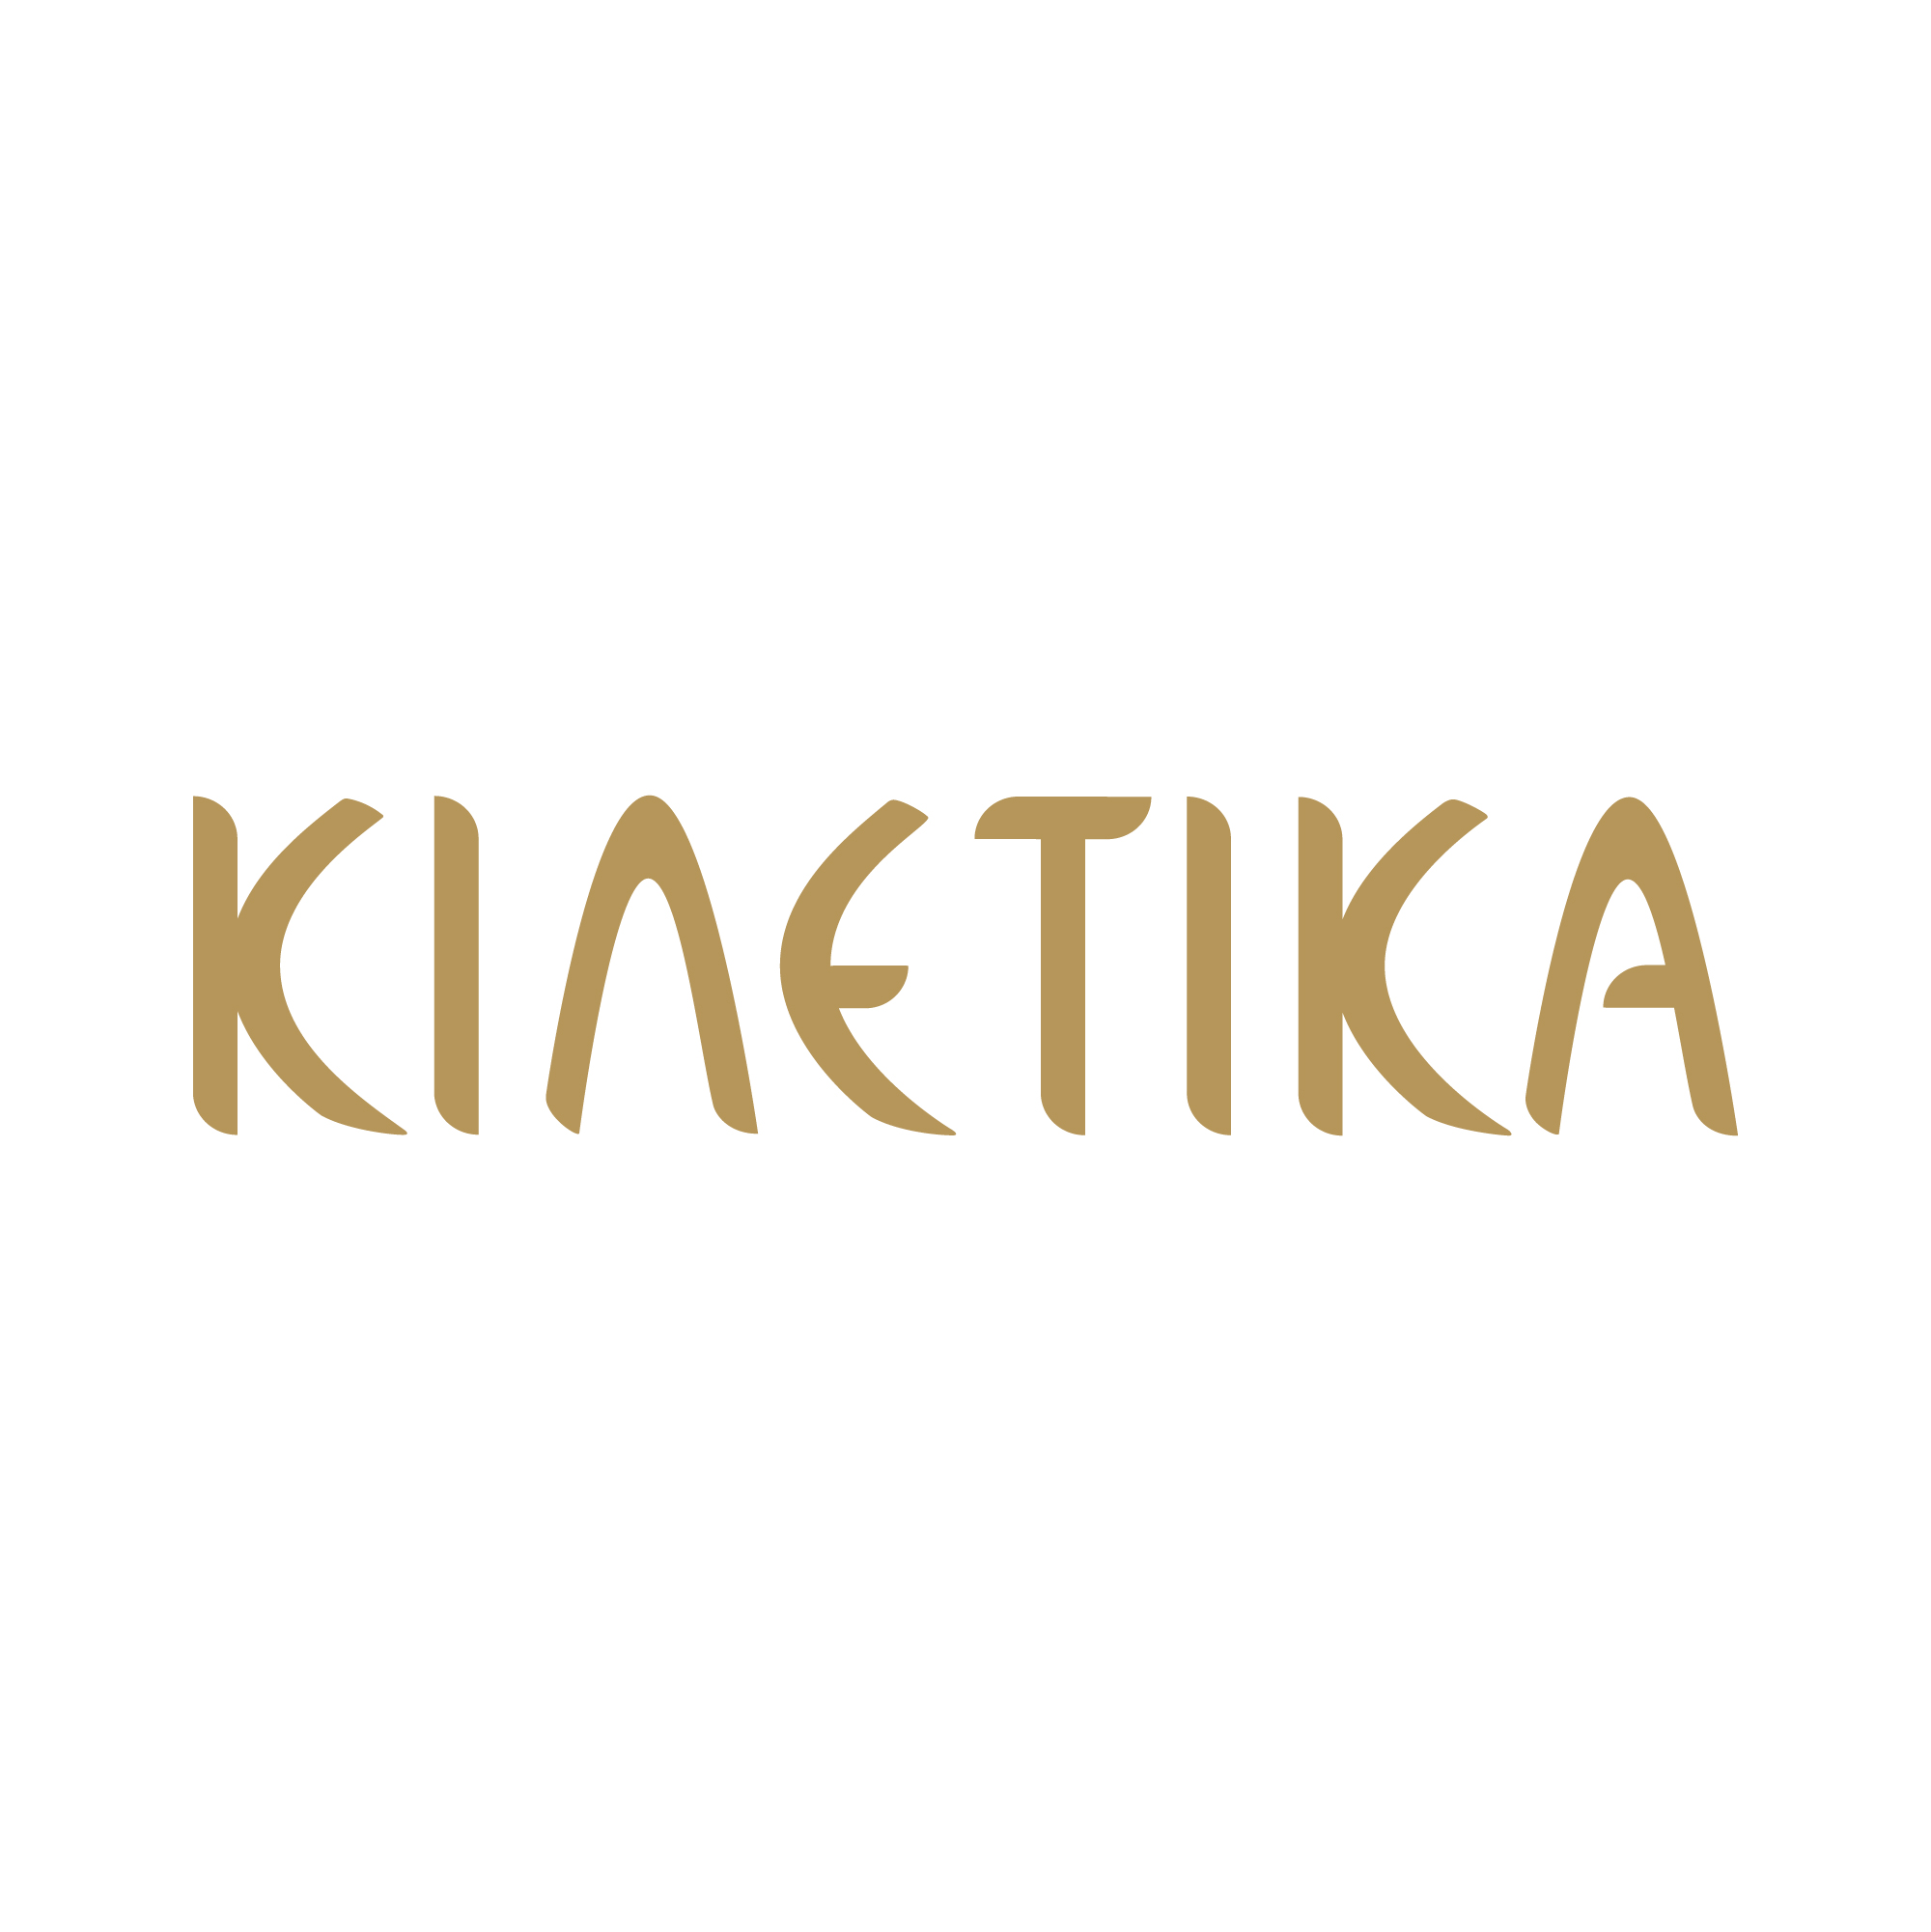 KINETIKA - lettering (2017)